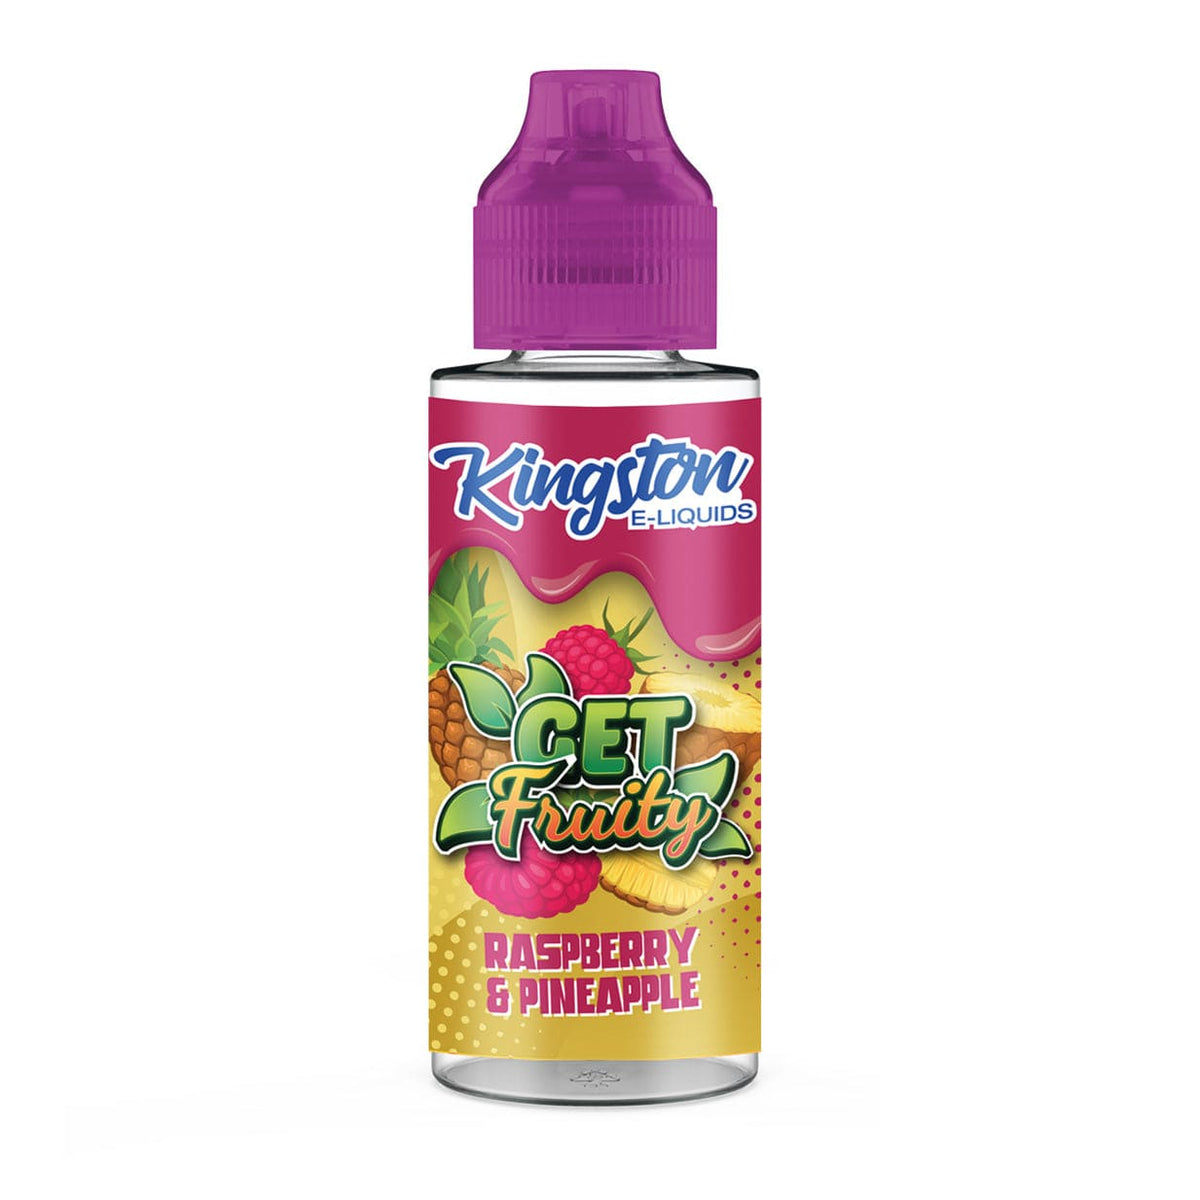 Kingston Get Fruity - Raspberry & Pineapple - 100ml Shortfill - Mcr Vape Distro